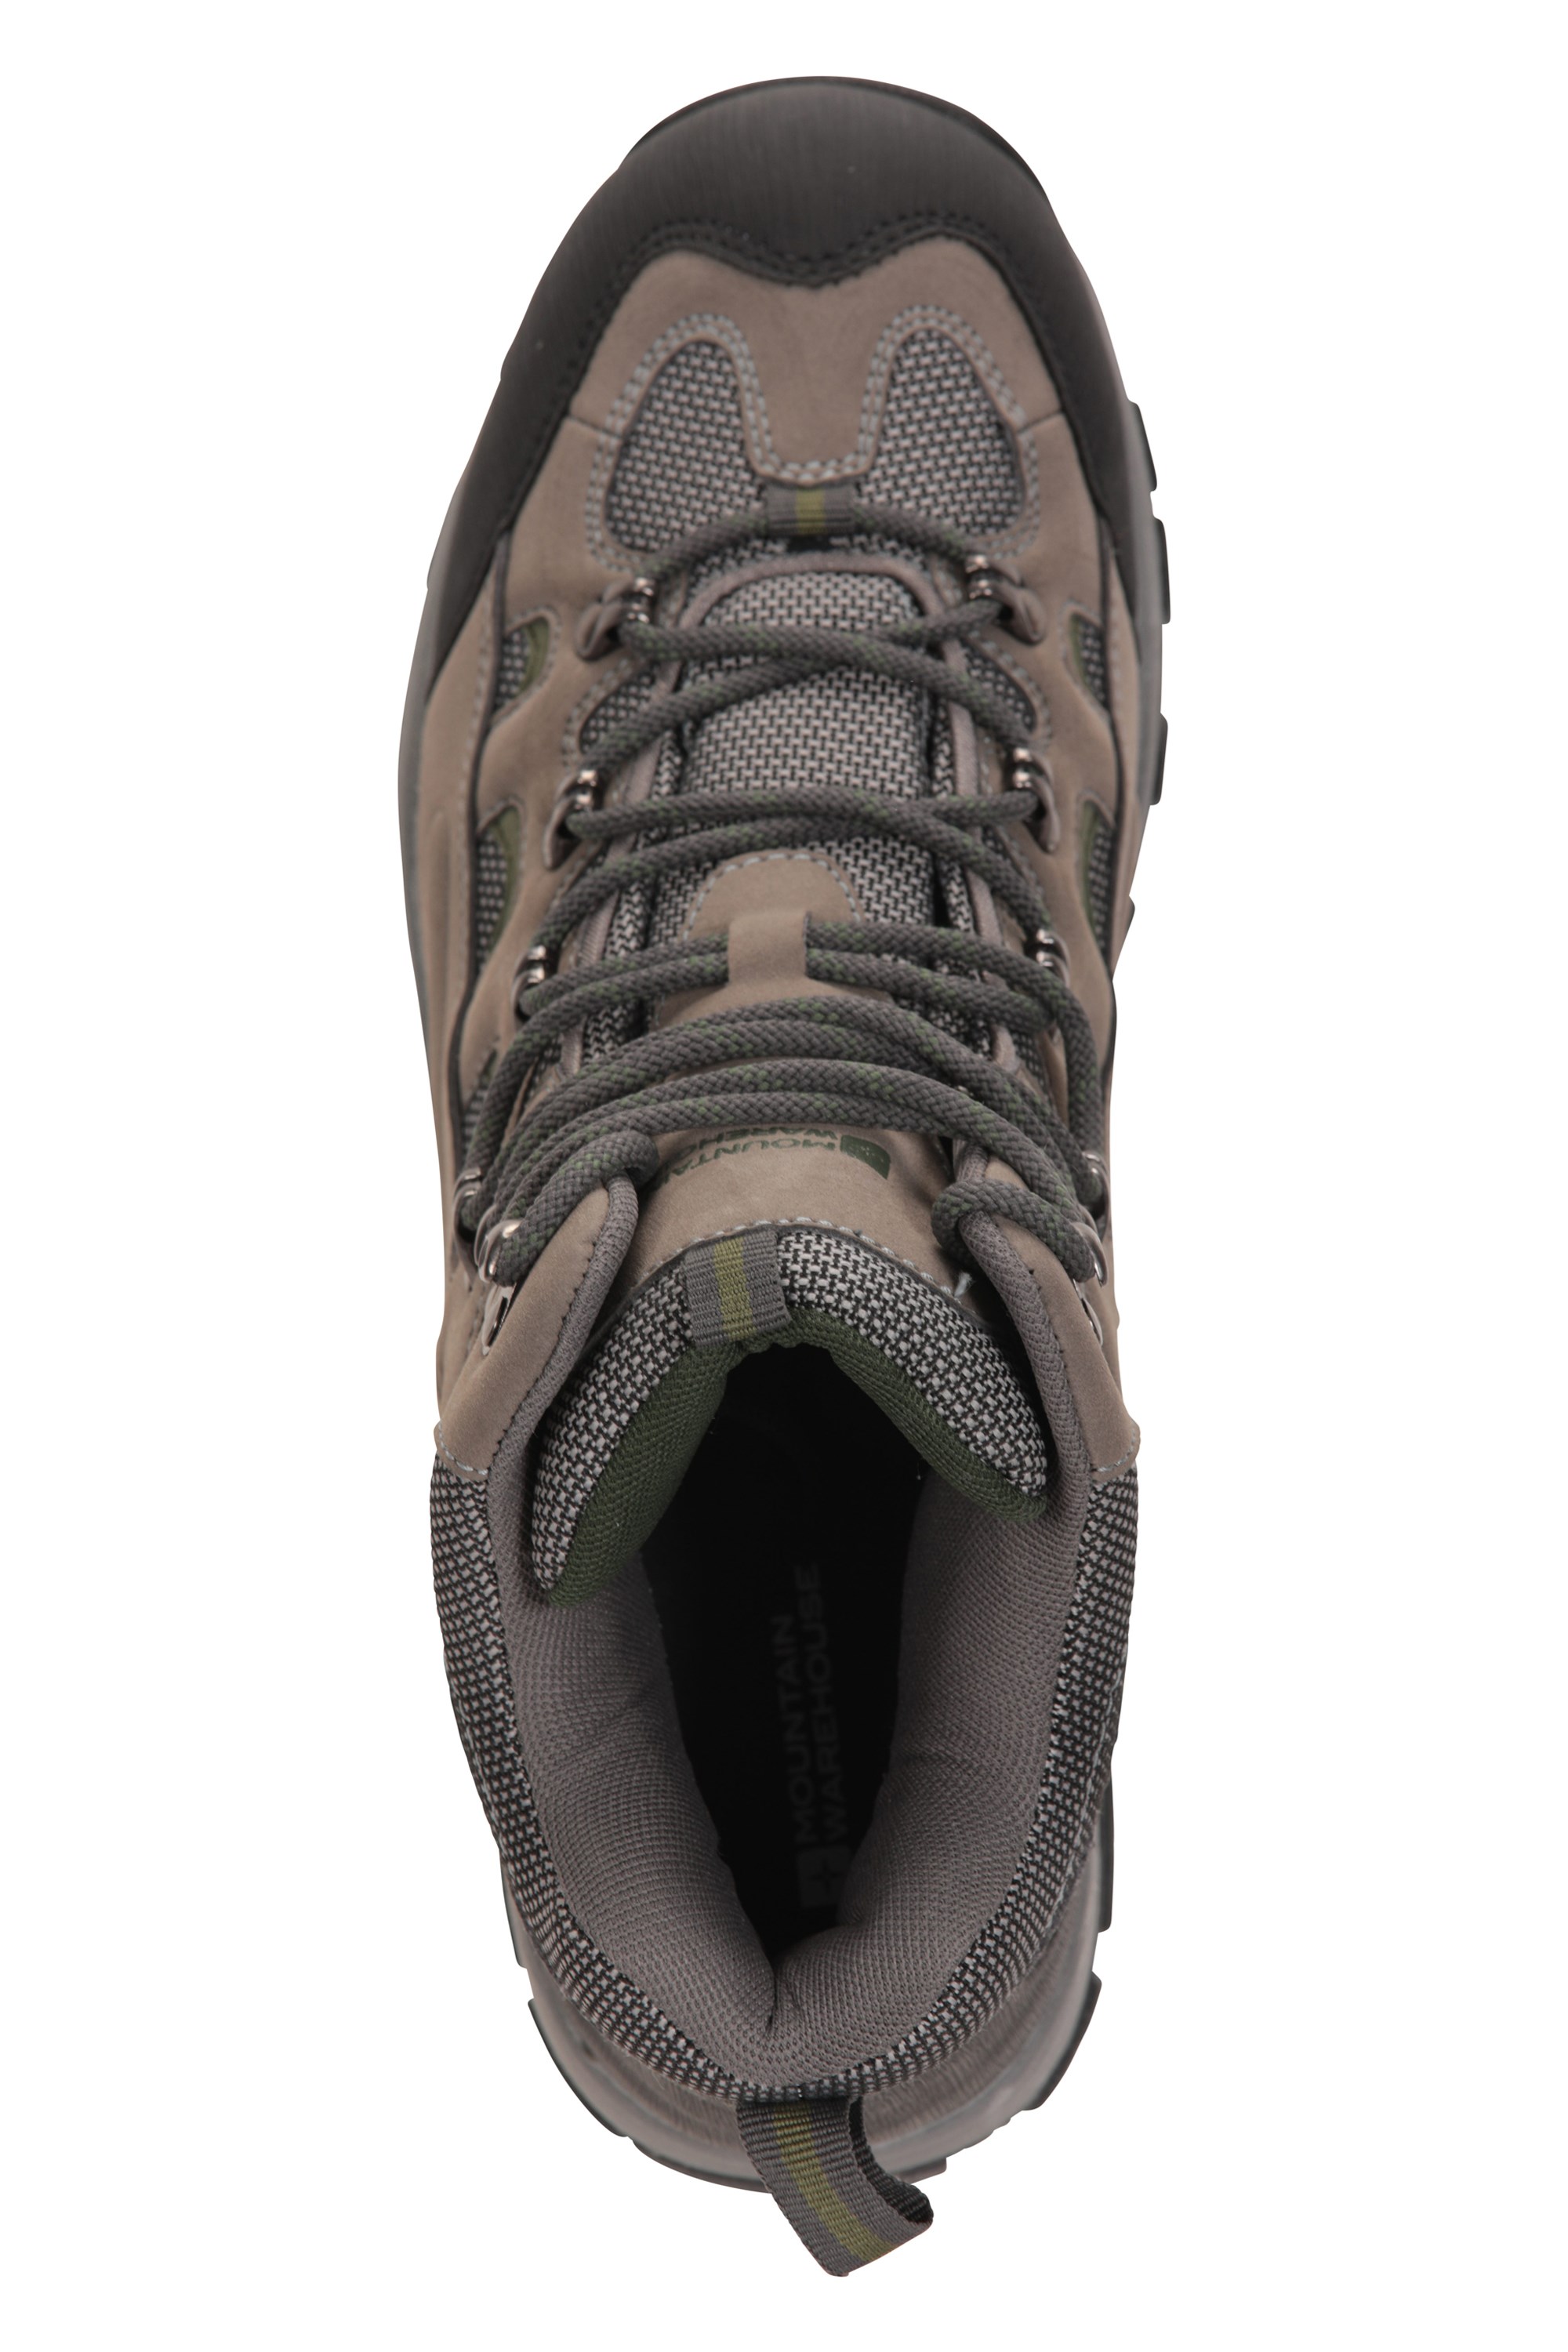 mountain warehouse waterproof shoes